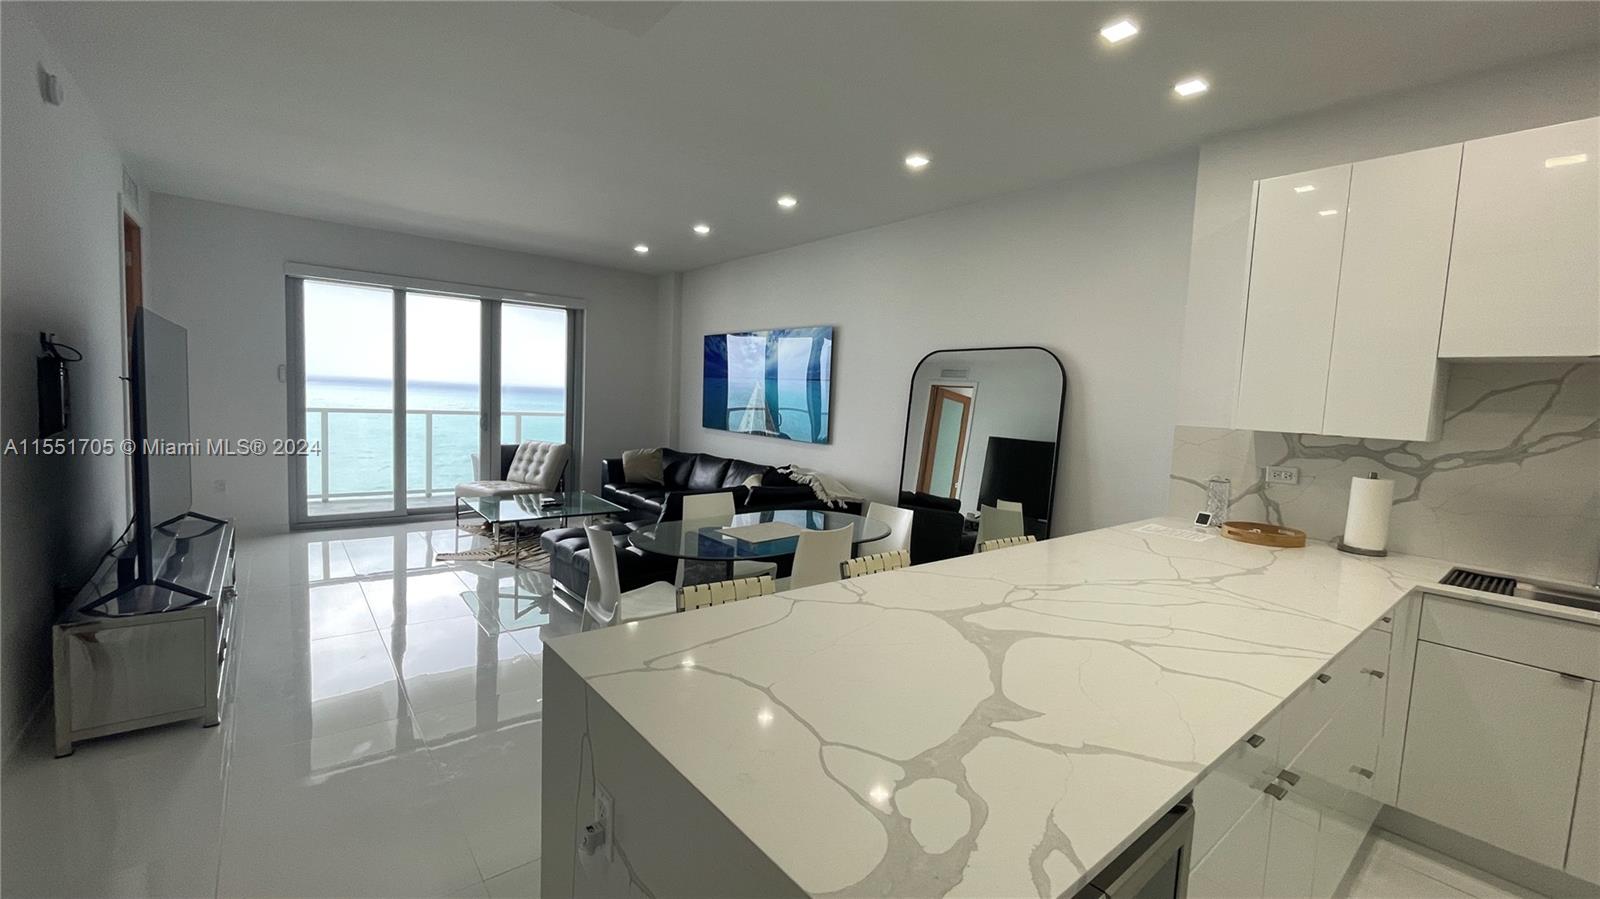 Rental Property at 5701 Collins Ave Ph08, Miami Beach, Miami-Dade County, Florida - Bedrooms: 2 
Bathrooms: 2  - $4,300 MO.